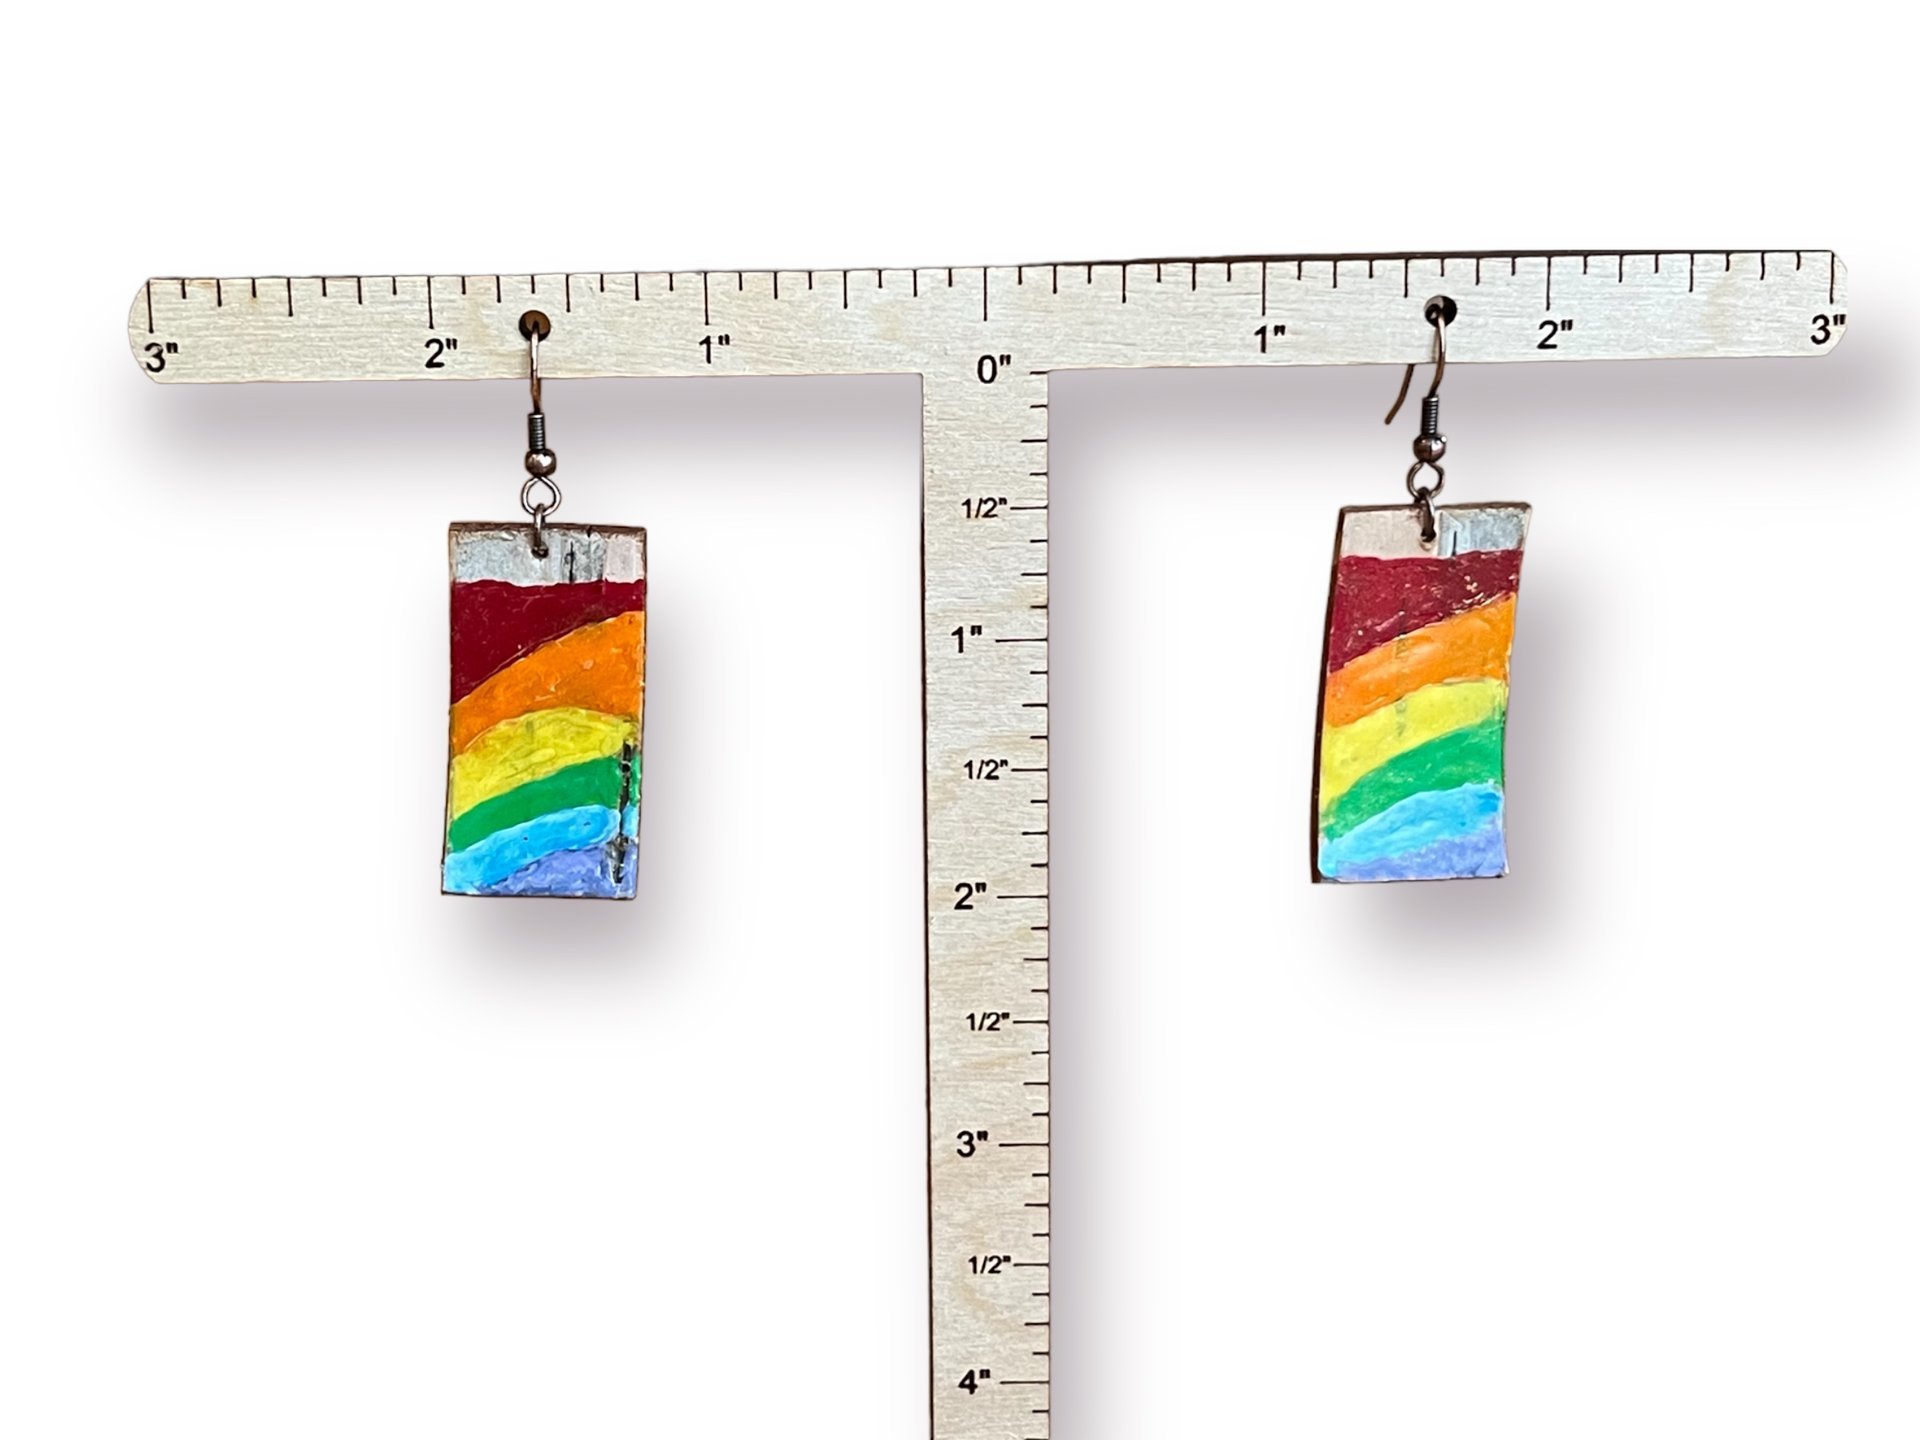 Rainbow Encaustic Earrings